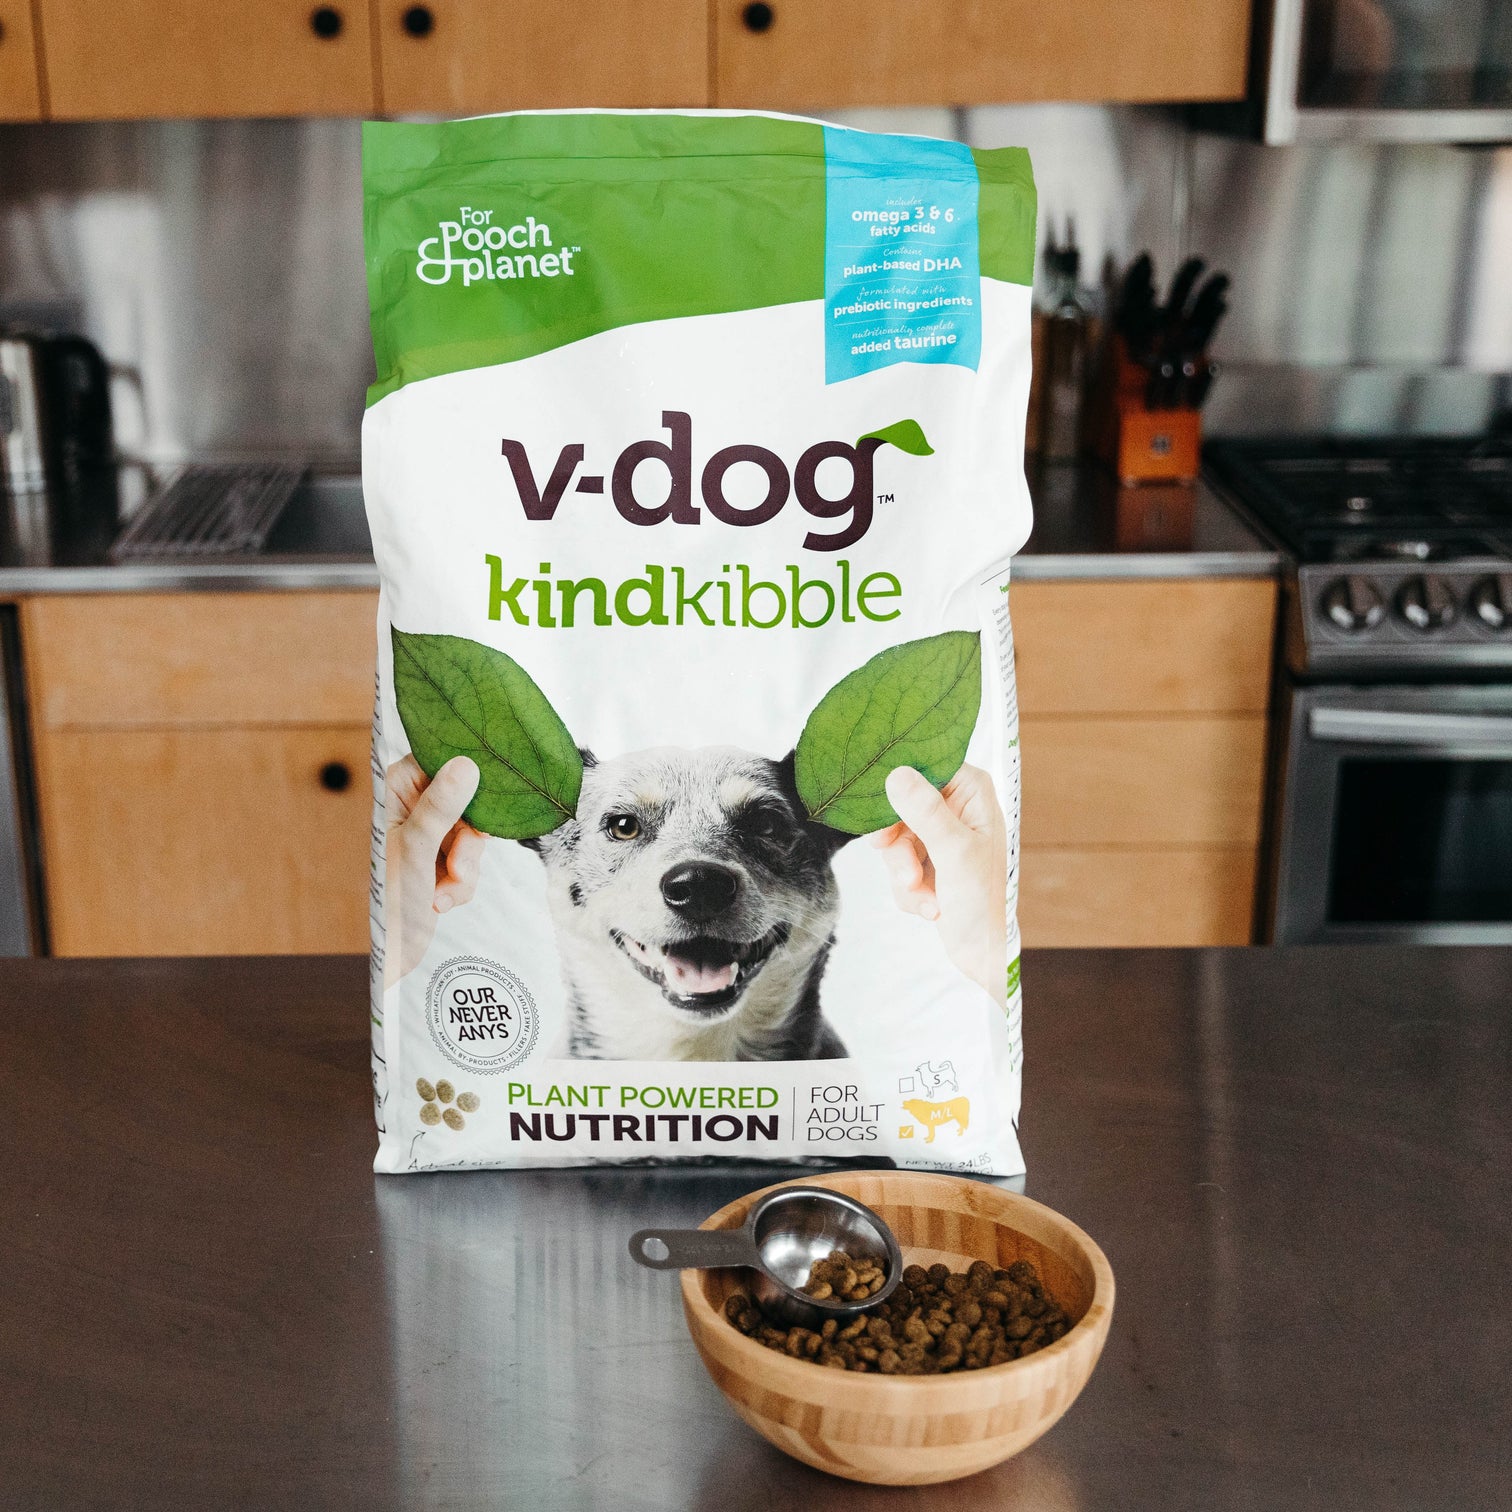 V-dog Kind Kibble | Plant-Based Dog Food – v-dog